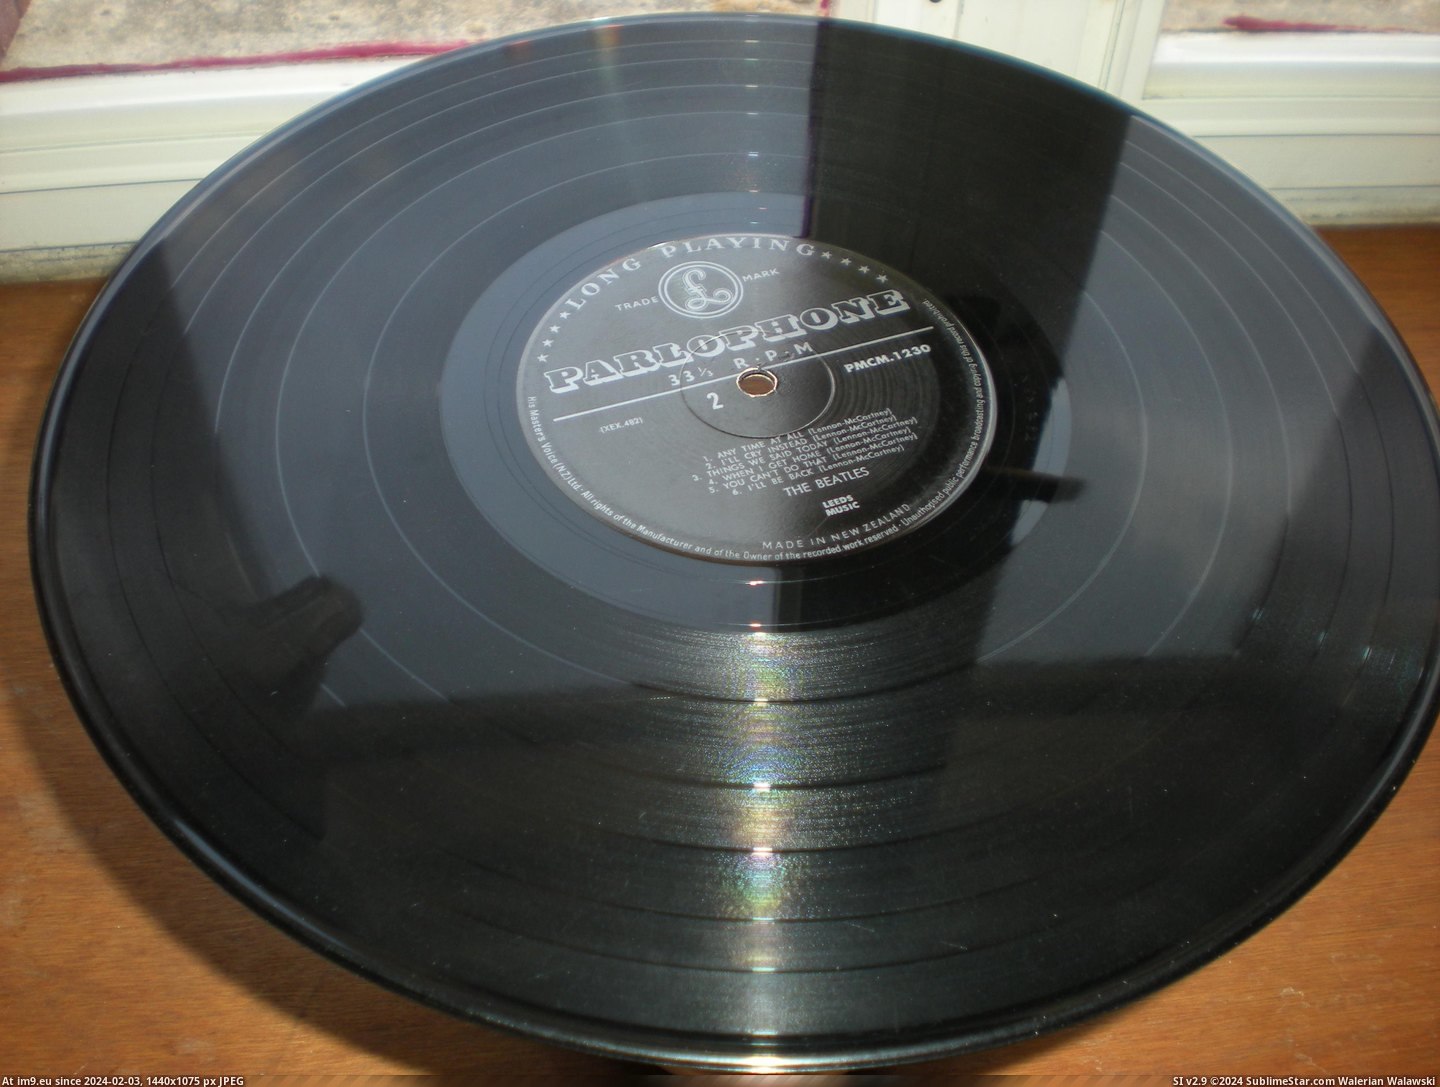 #Hdn #Beatles #Parlophone #Record #Vinyl HDN NZ 4 Pic. (Bild von album new 1))